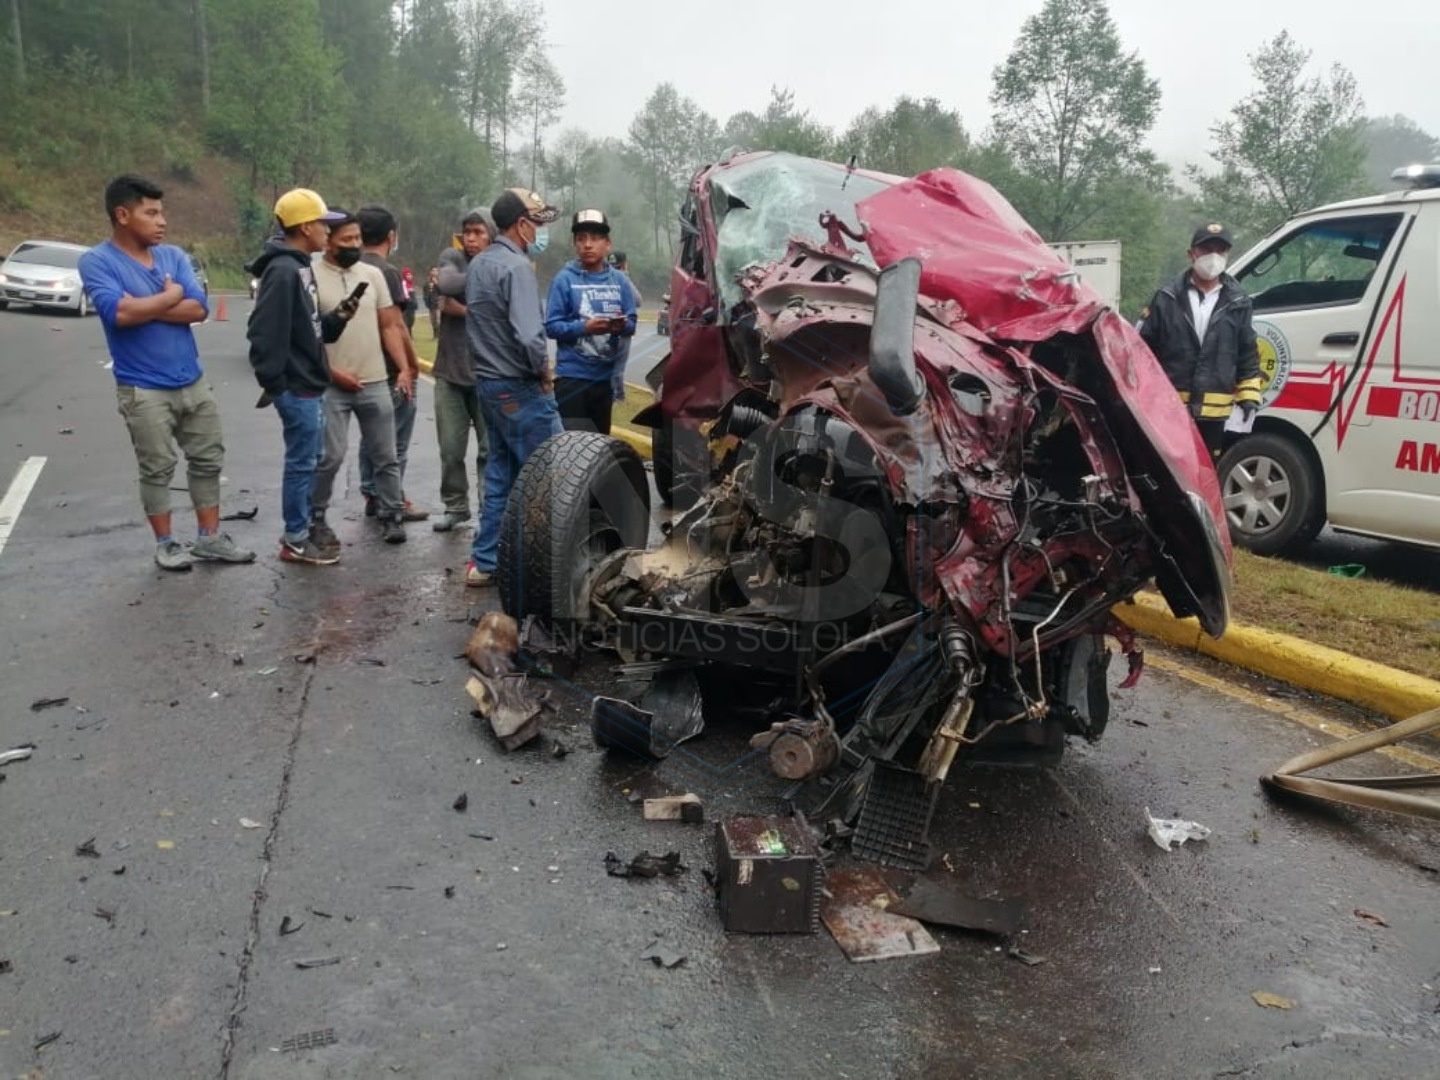 El picop en el que viajaba Lorenzo Ábner Tzoc Carrillo, de 11 años, quedó destruido en el kilometro 158 de la ruta Interamericana, Nahualá, Sololá. (Foto Prensa Libre: Tomada de Noticias Sololá)